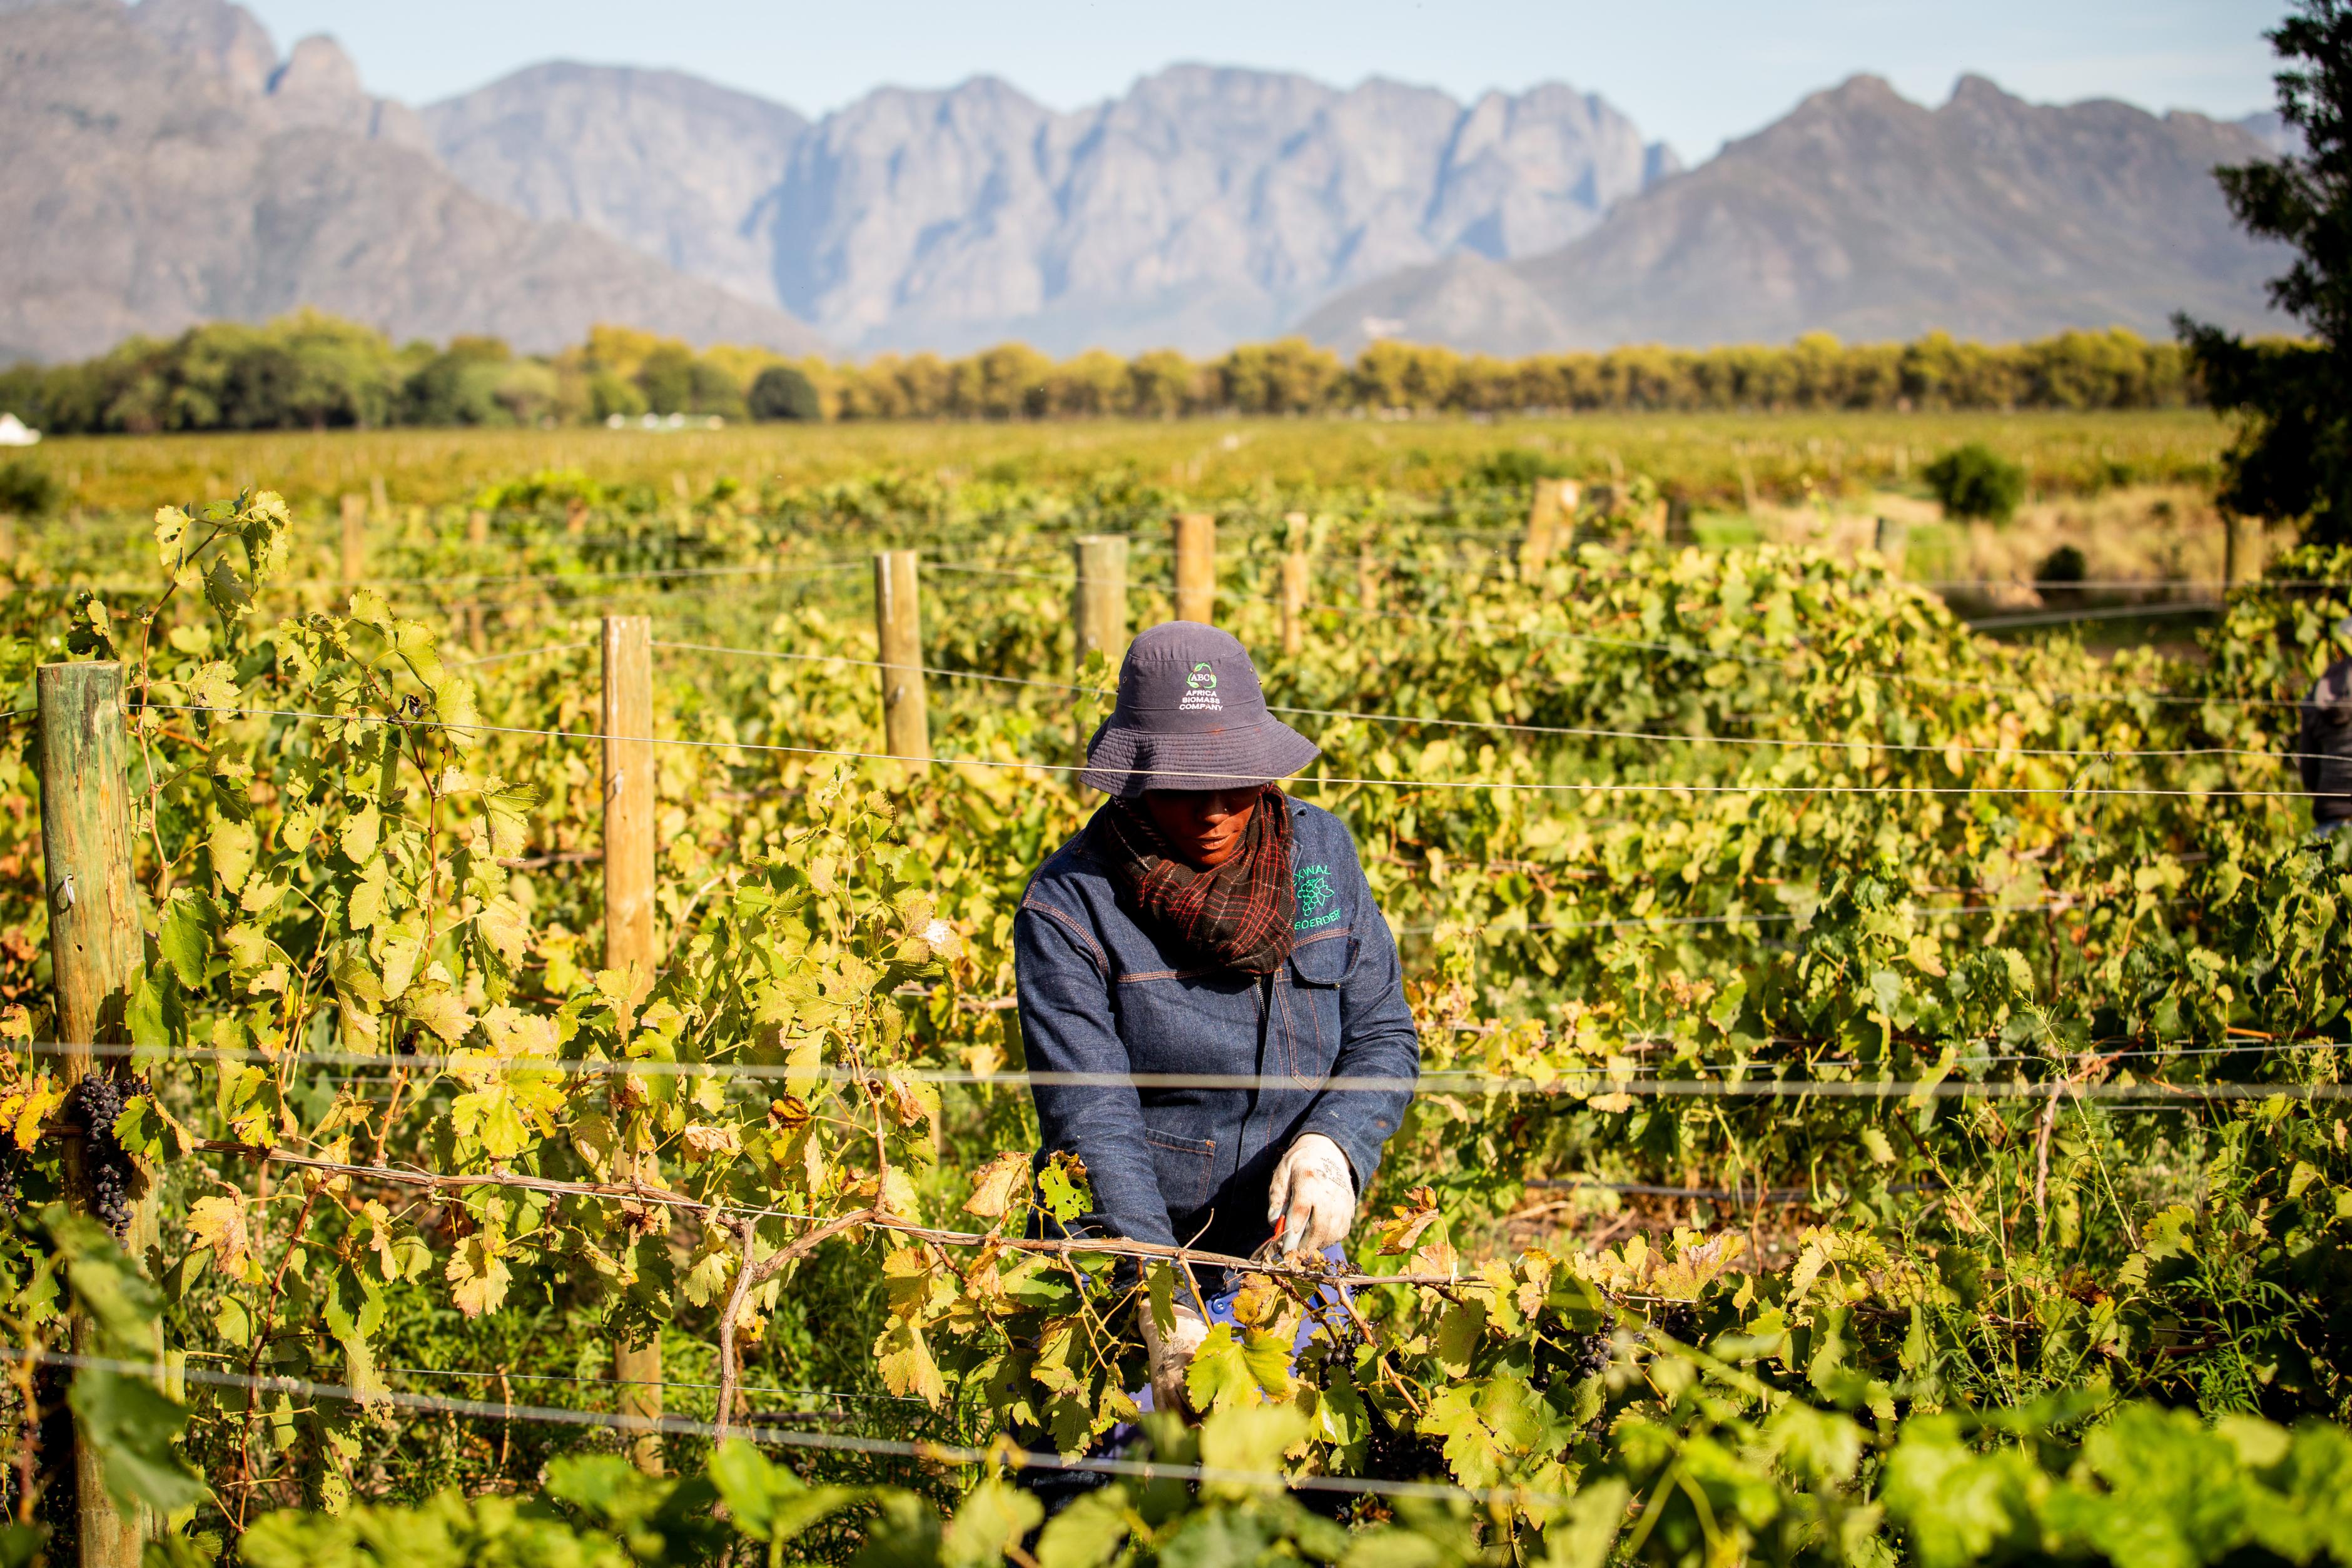 Farmarbeiterin auf einer Weinplantage, umgeben von Weinreben. Sie trägt langärmilige Arbeitskleidung, Handschuhe und einen Hut. Im Hintergrund ist eine Gebirgskette zu sehen.